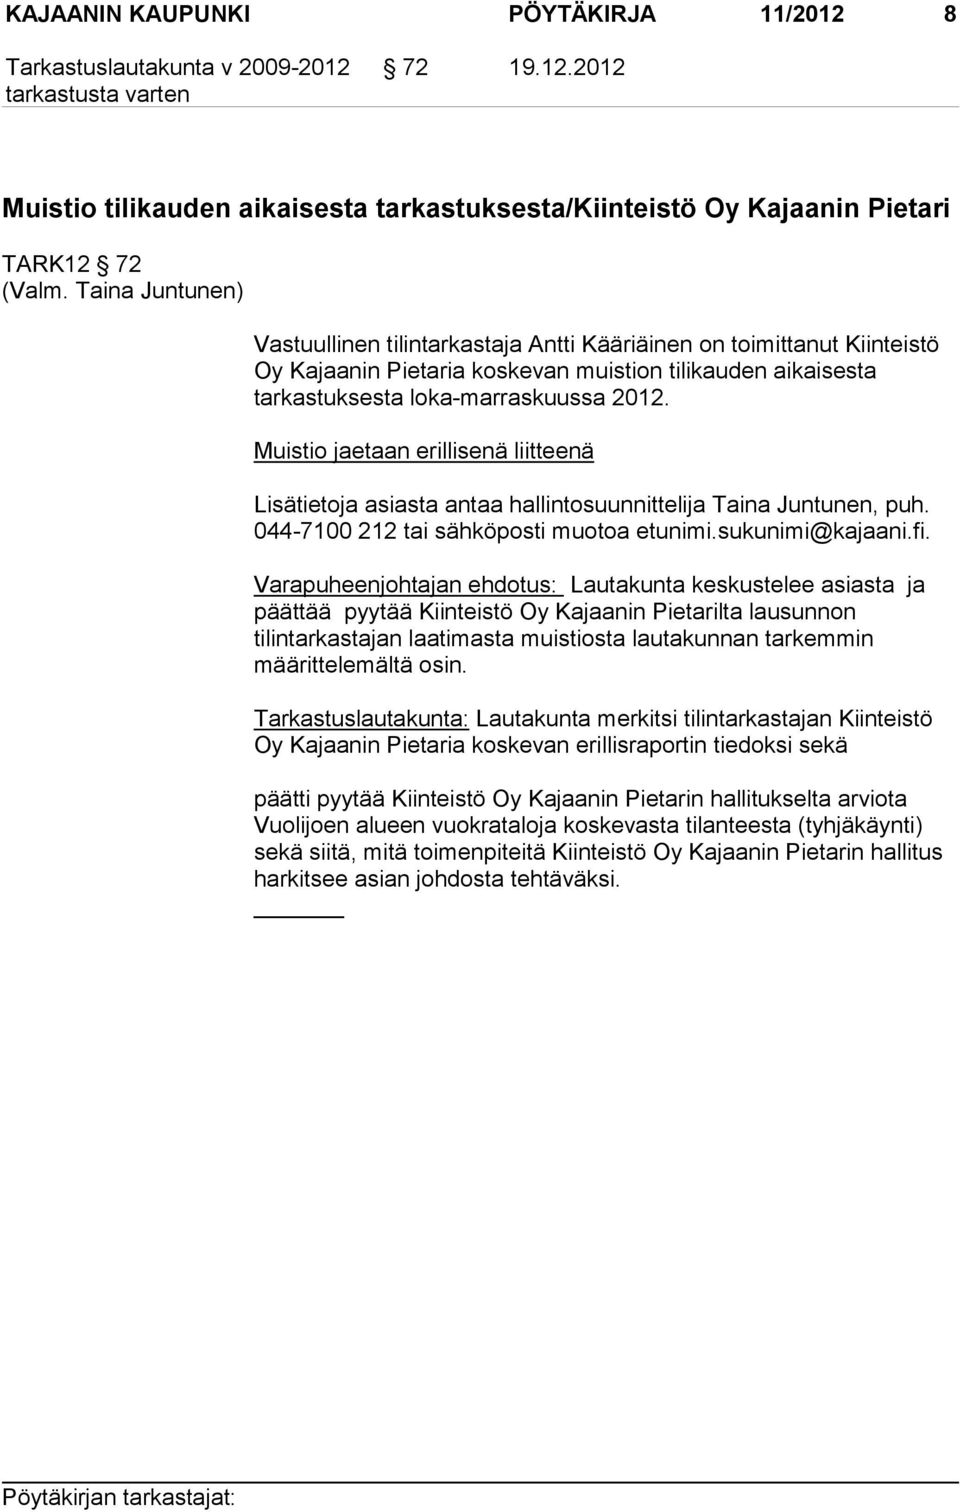 Muistio jaetaan erillisenä liitteenä Lisätietoja asiasta antaa hallintosuunnittelija Taina Juntunen, puh. 044-7100 212 tai sähköposti muotoa etunimi.sukunimi@kajaani.fi.